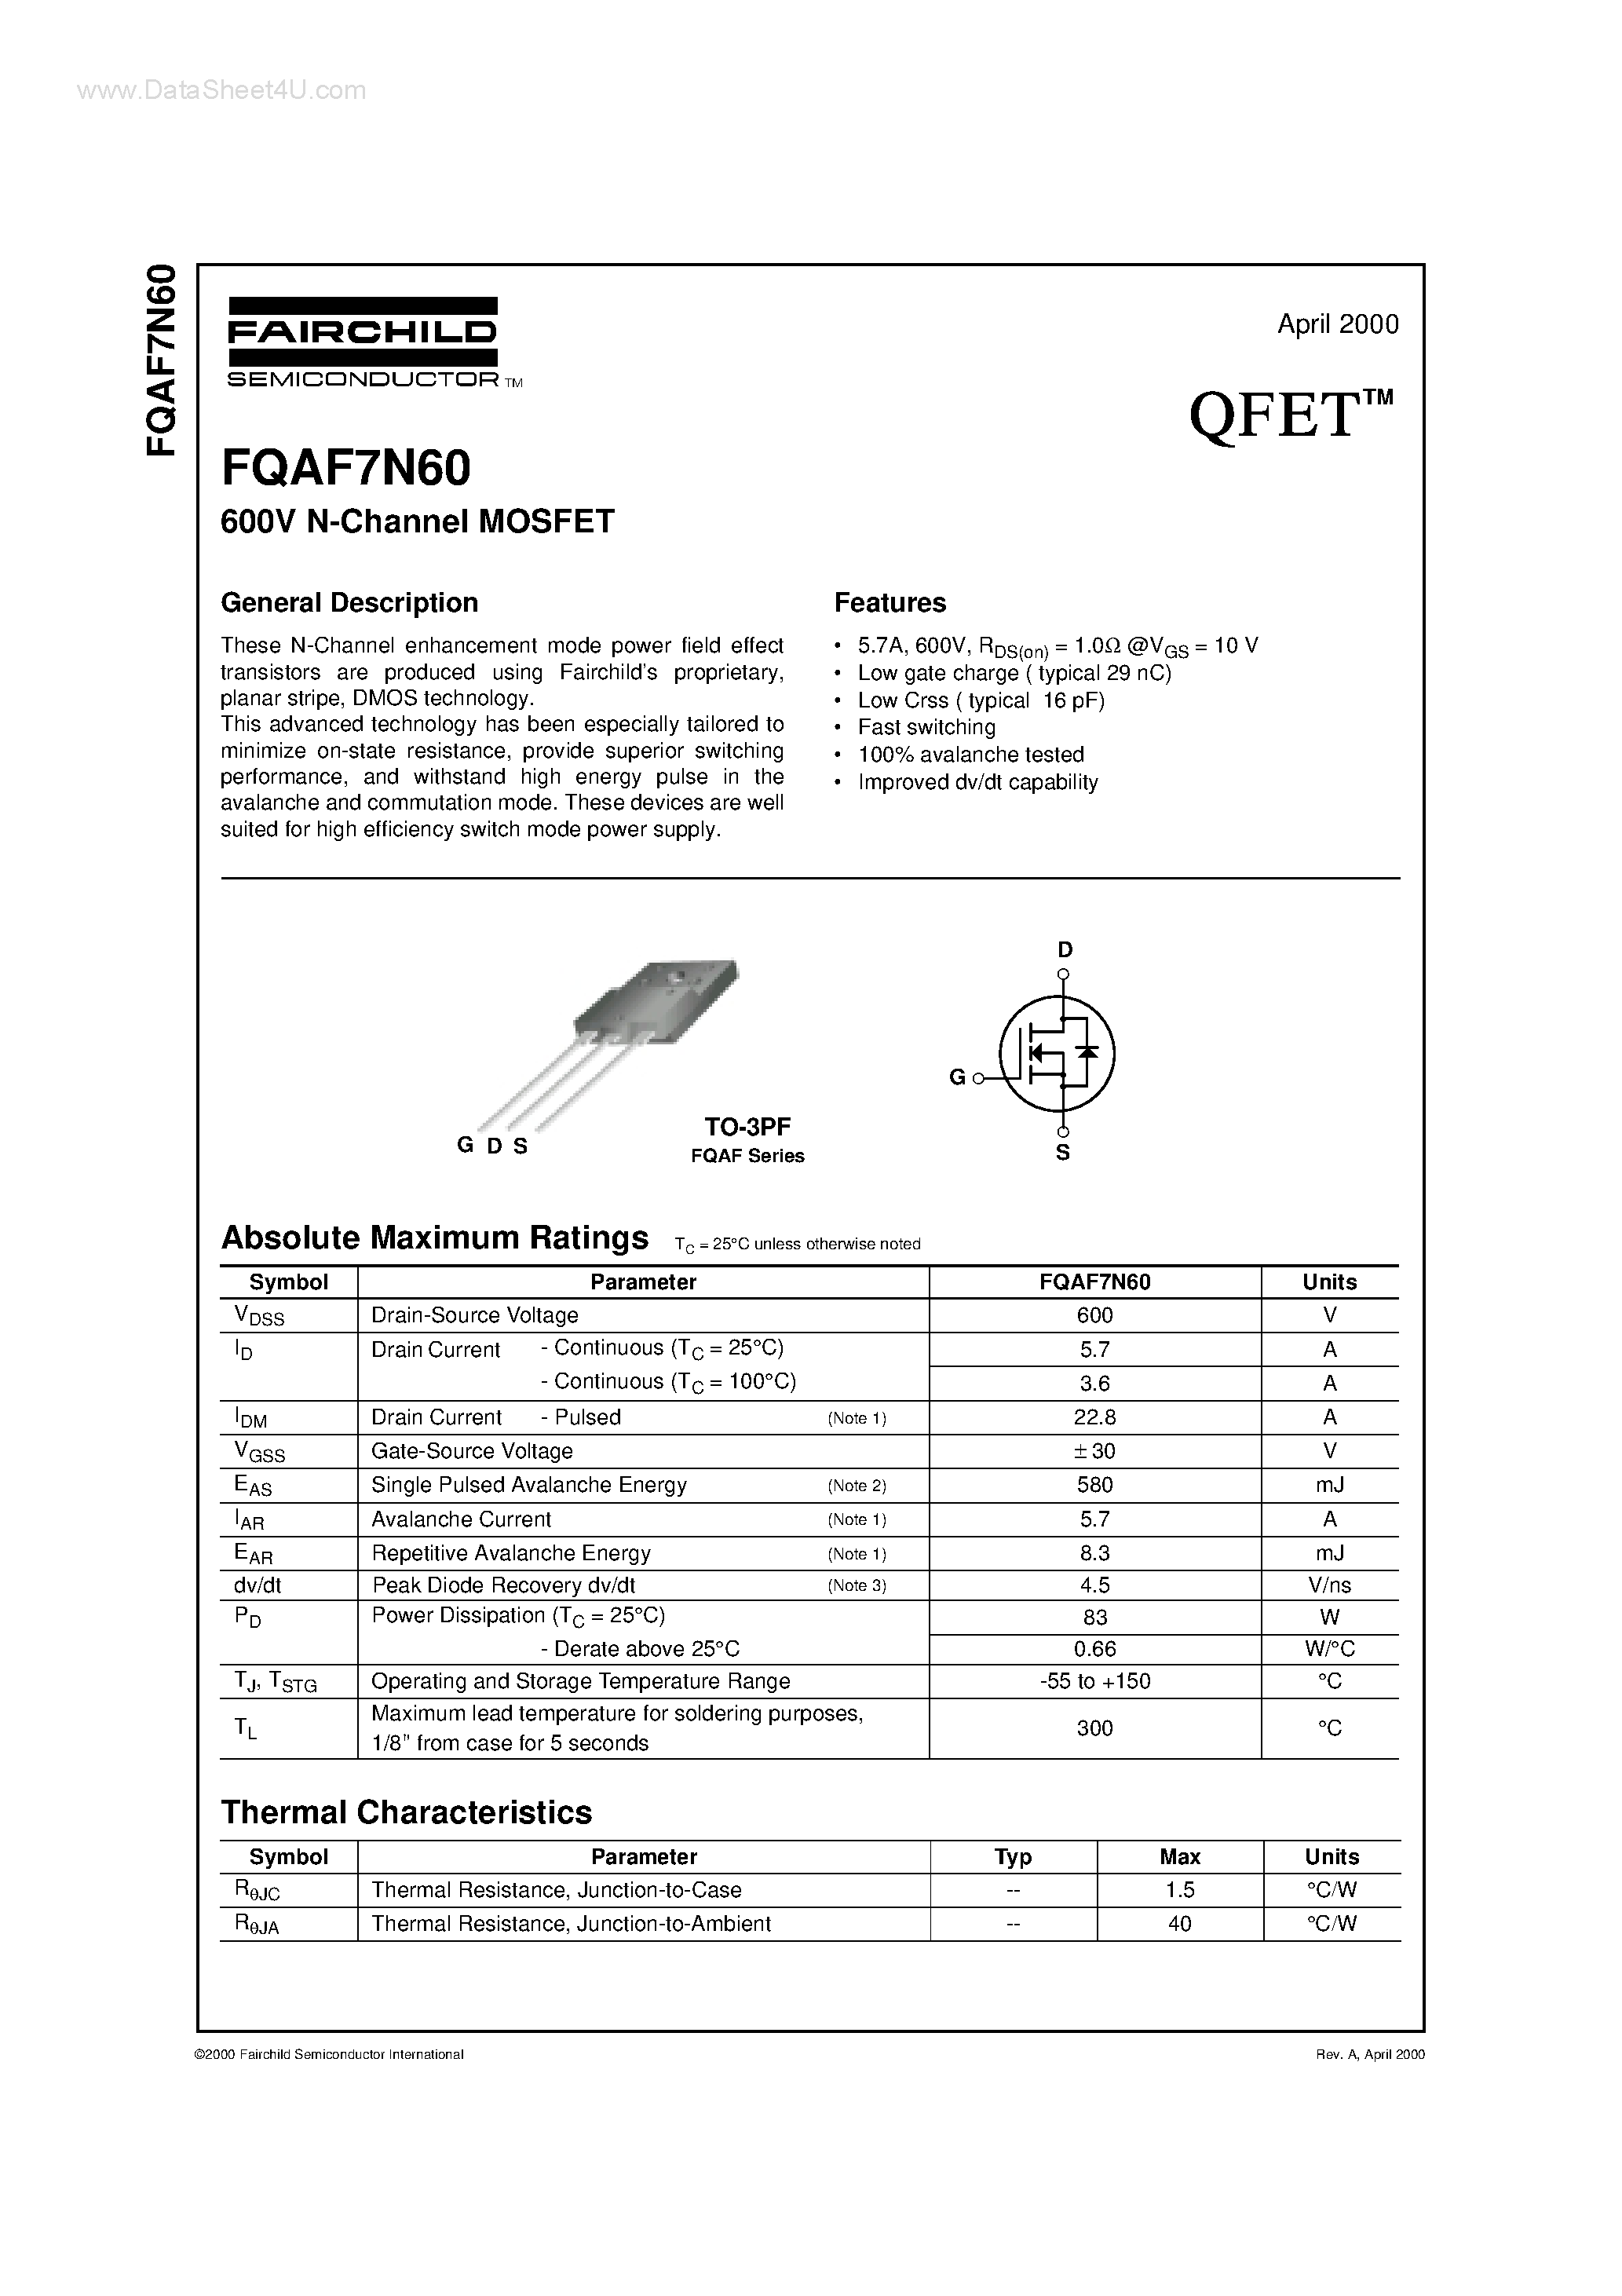 Даташит FQAF7N60 - 600V N-Channel MOSFET страница 1